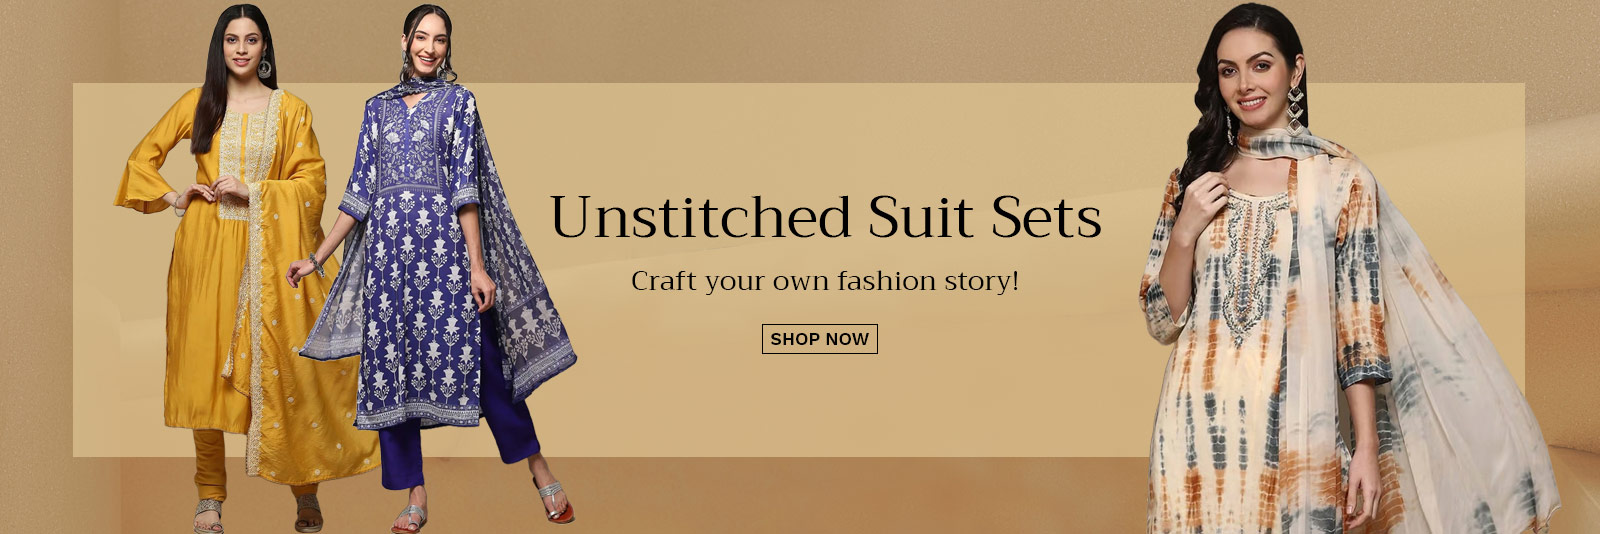 Unstitched Suit Sets